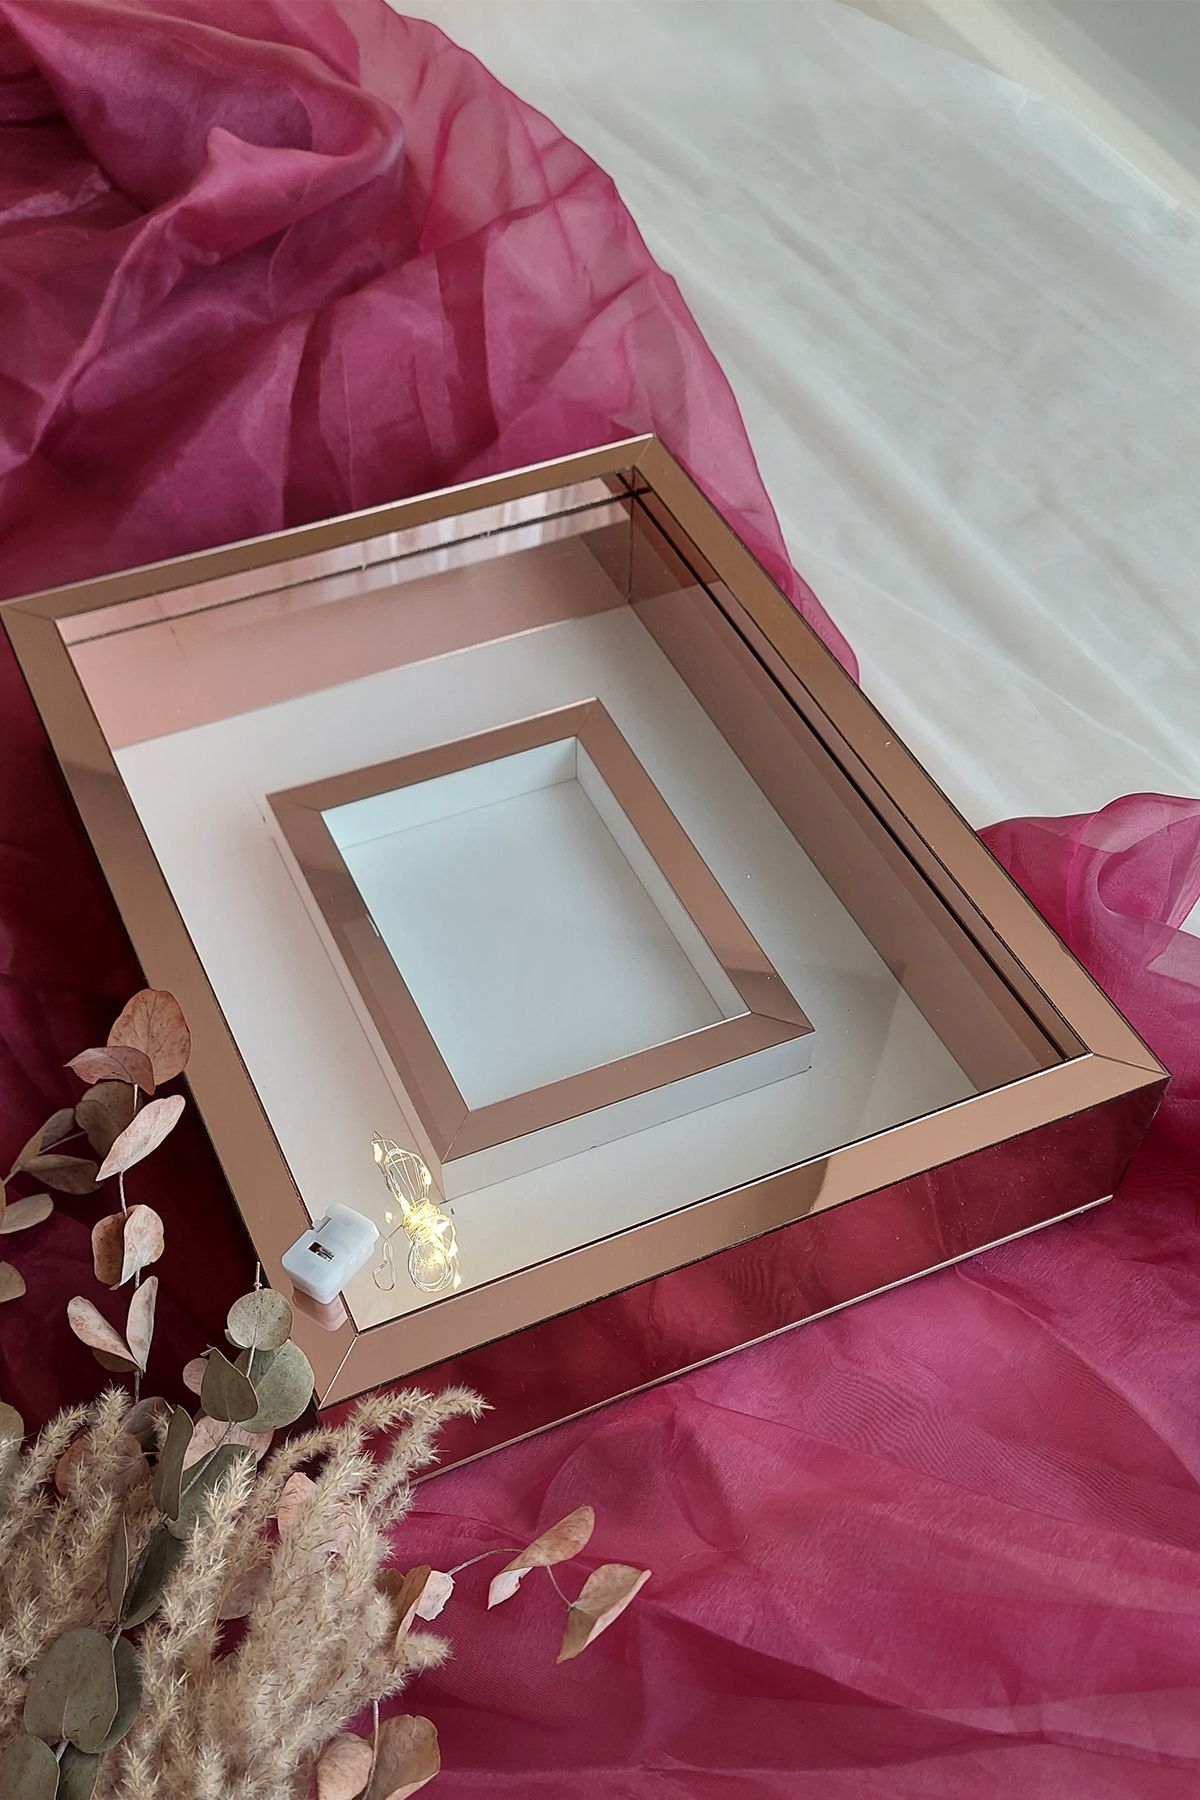 Verda Çerçeve 30x40 cm Ledli Rose Pleksi Kaplı Fotoğraf Bölümlü Tasarım Gül Kutusu Anı Çerçevesi Isimsiz